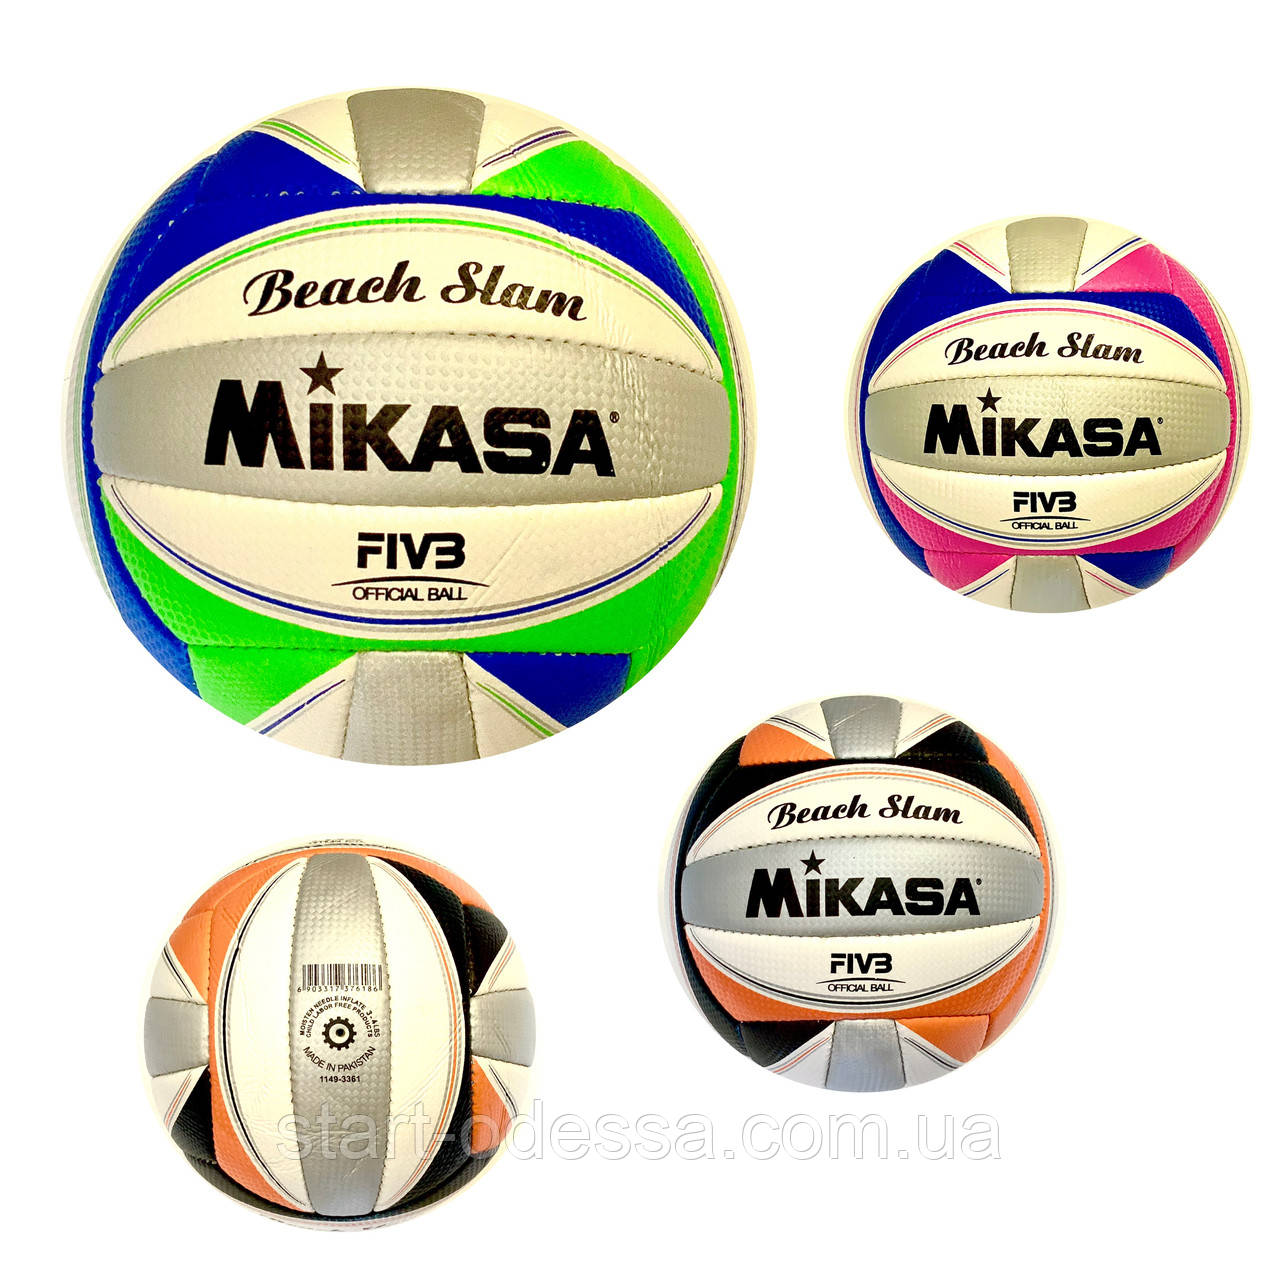 М'яч для пляжного волейболу MIK